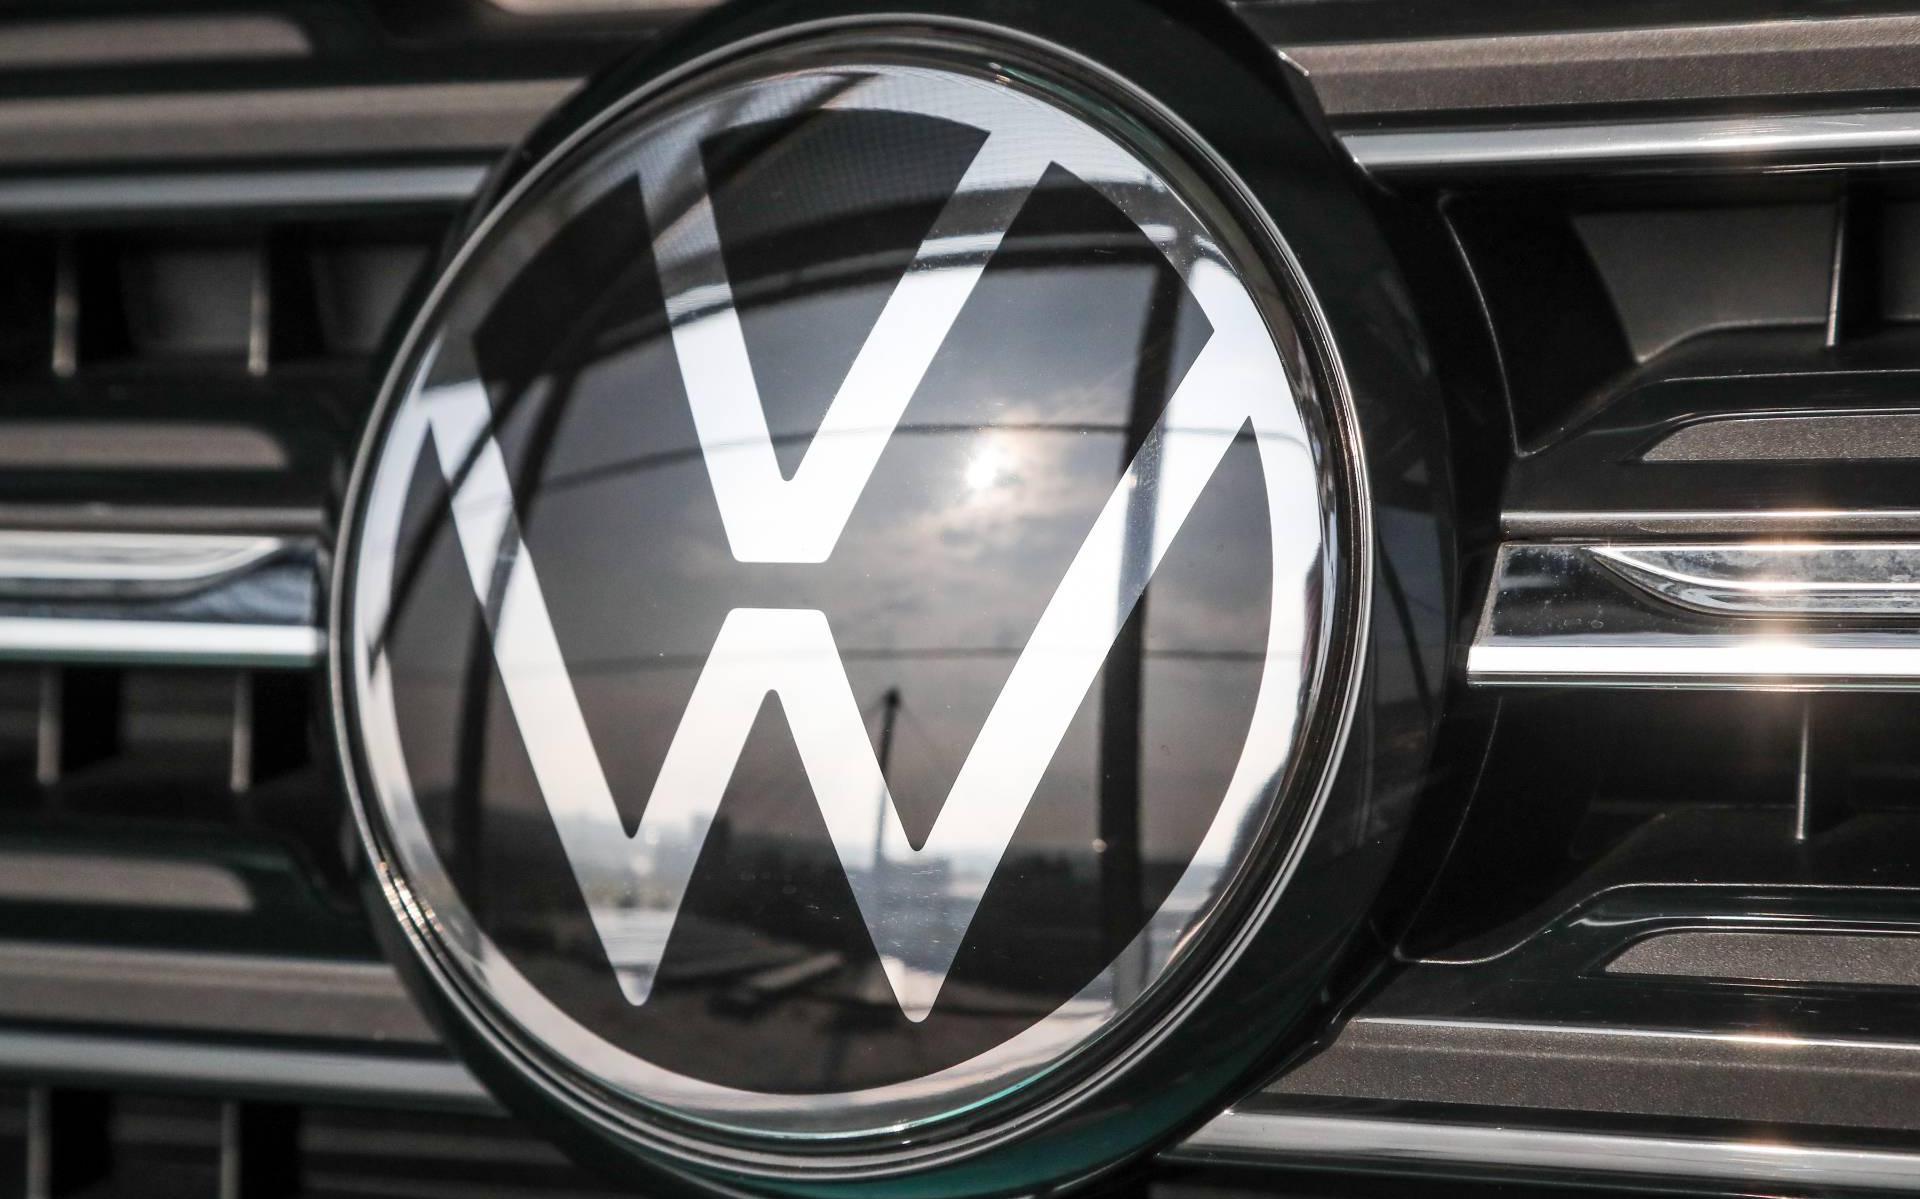 autoconcern Volkswagen fors gestegen in eerste kwartaal - Leeuwarder Courant